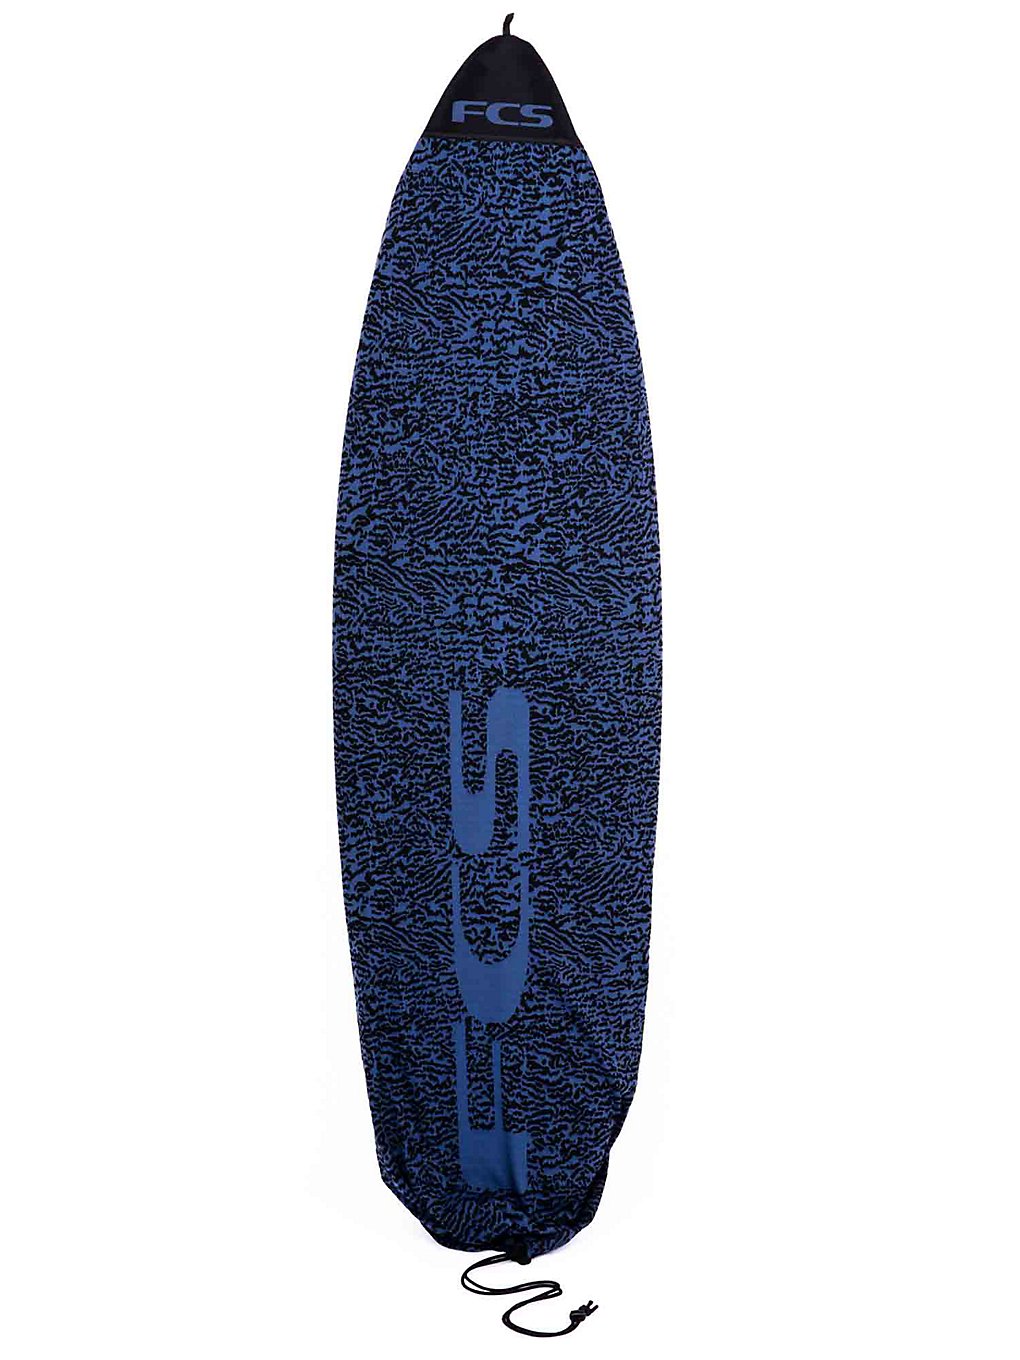 FCS Stretch All Purpose 6'3" Surfboard-Tasche stone blue kaufen